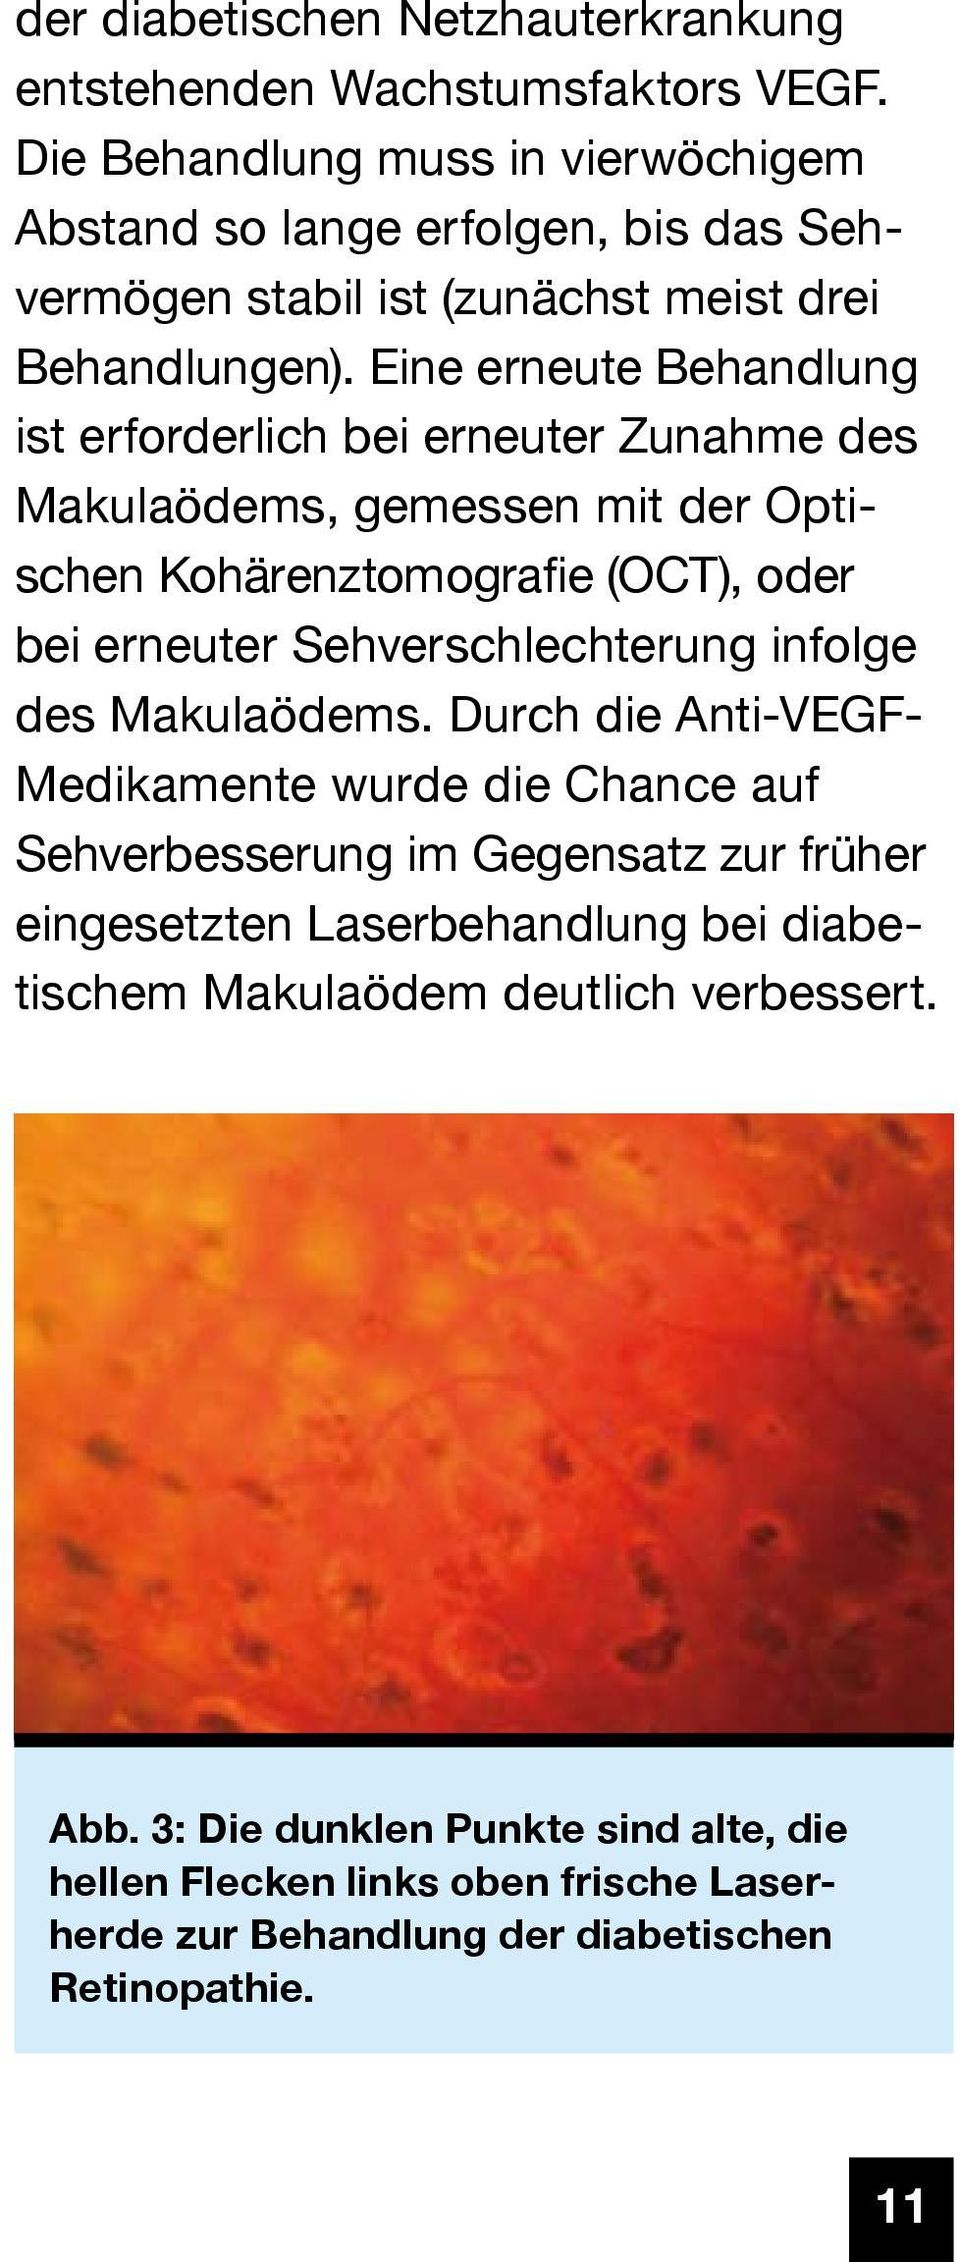 Eine erneute Behandlung ist erforderlich bei erneuter Zunahme des Makulaödems, gemessen mit der Optischen Kohärenztomografie (OCT), oder bei erneuter Sehverschlechterung